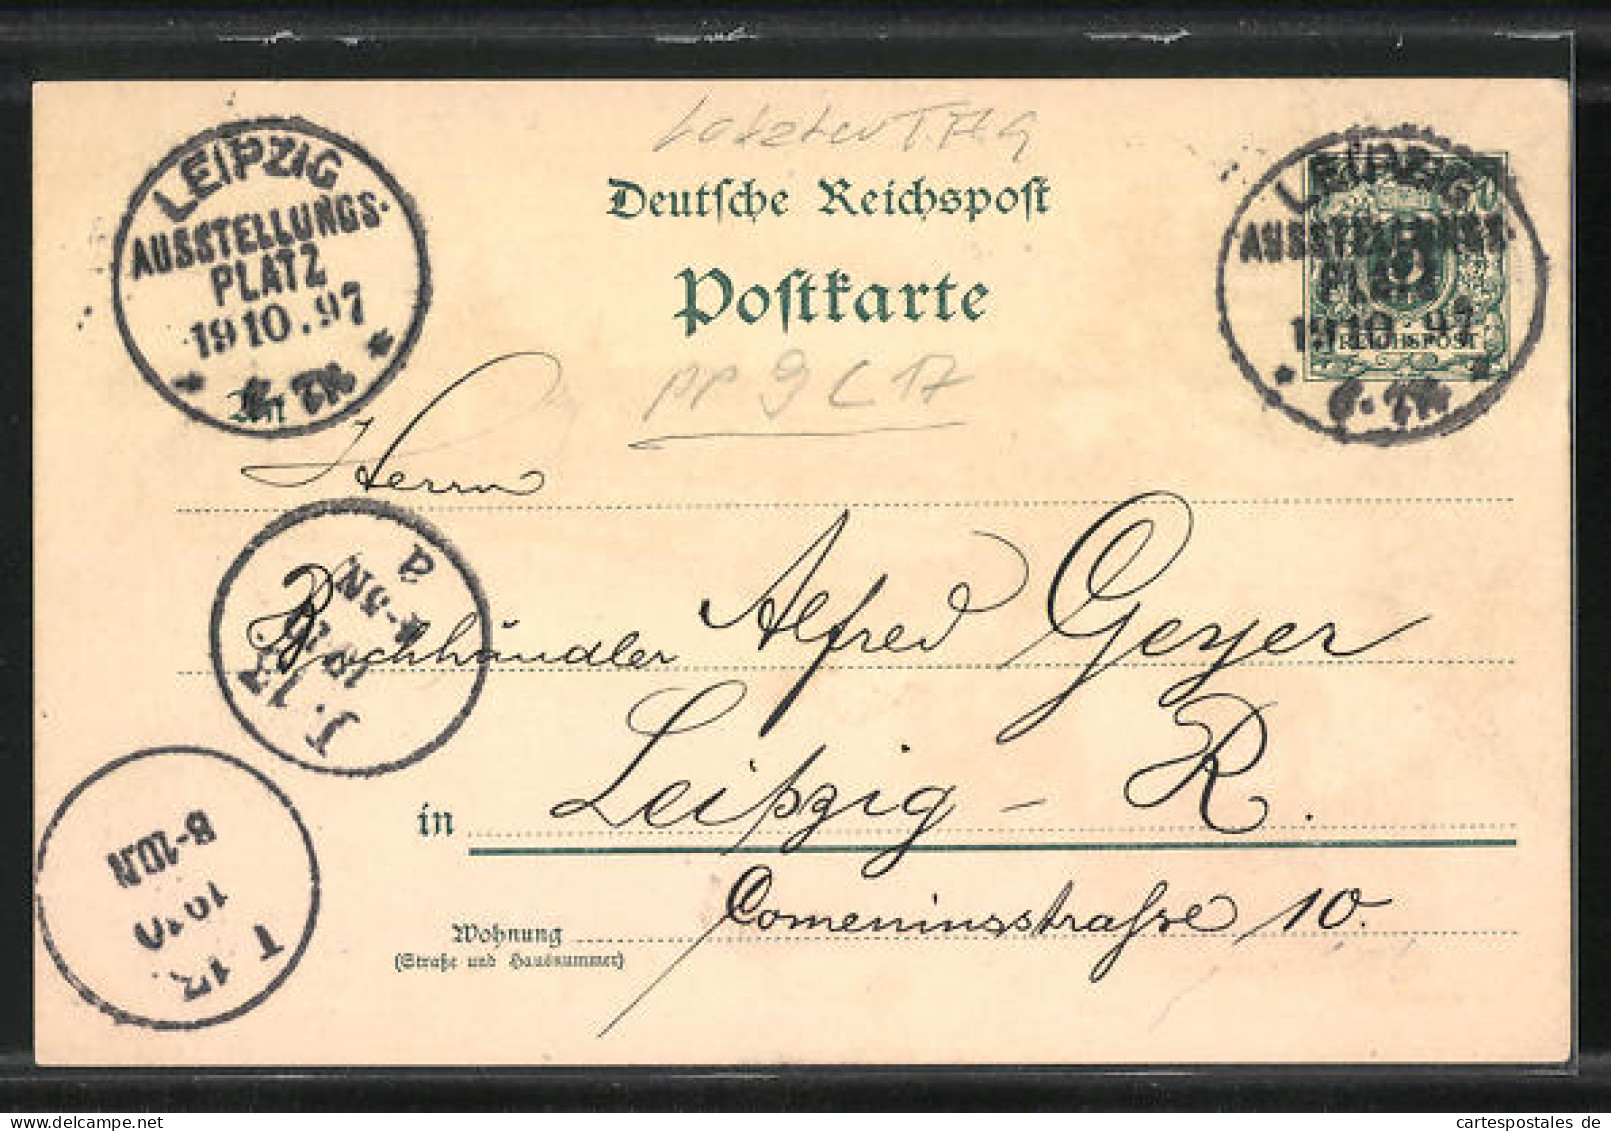 Lithographie Leipzig, Sächs.-Thür. Industrie U. Gewerbe-Ausstellung 1897, Reiterstandbild König Albert V. Sachsen  - Tentoonstellingen